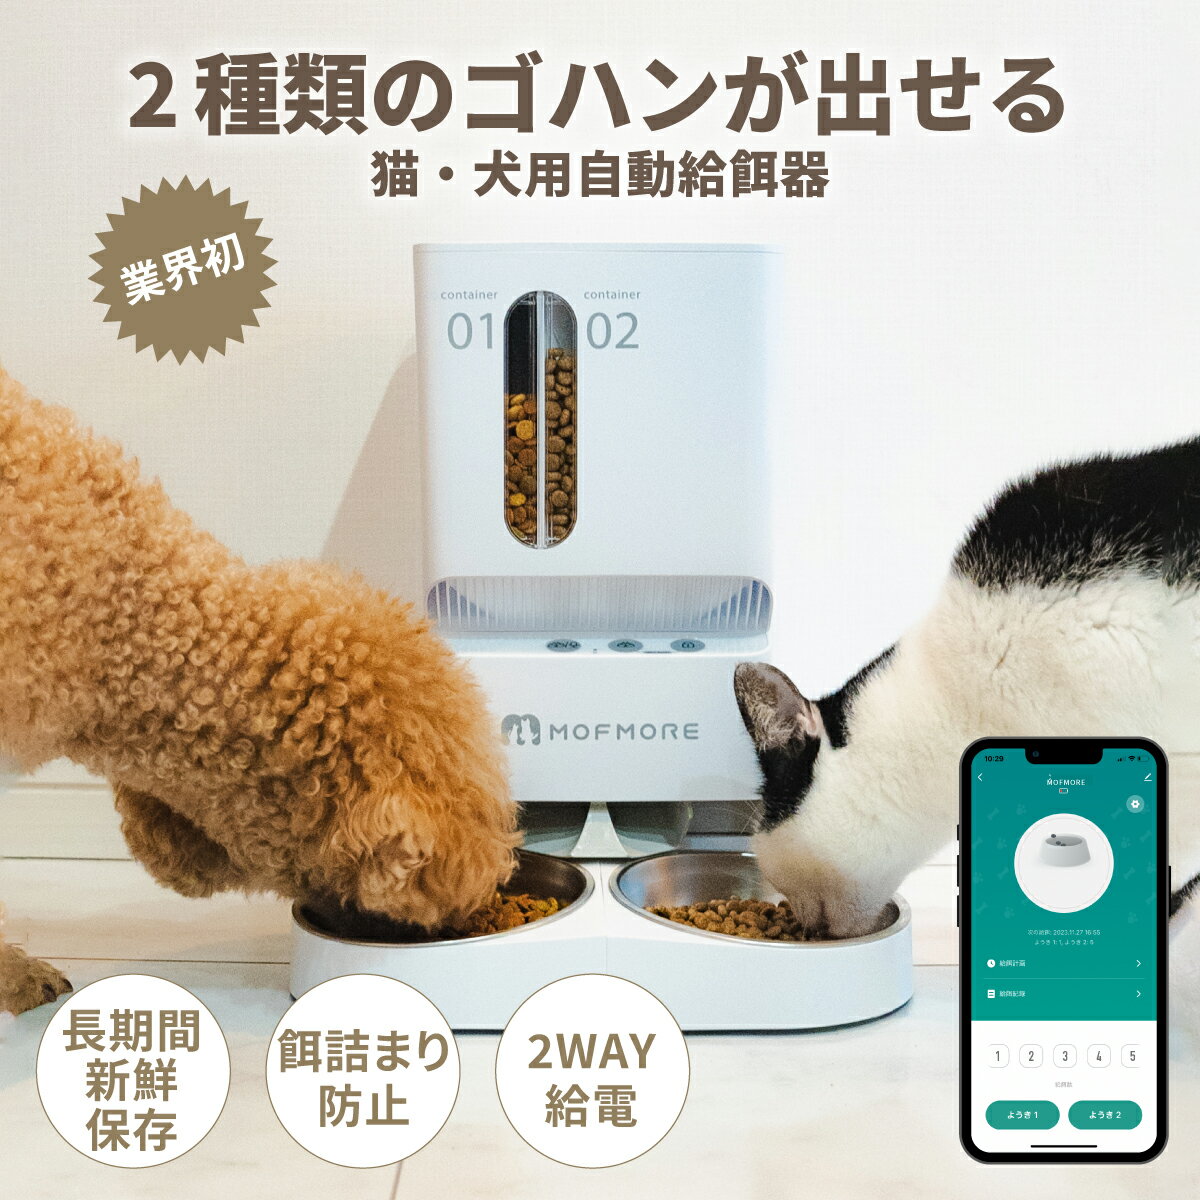 【公式】フィッシー ファンフィーダーマット フード ボウル 容器 皿 トレイ シリコン 早食い防止 猫 ねこ ネコ ダッドウェイペット